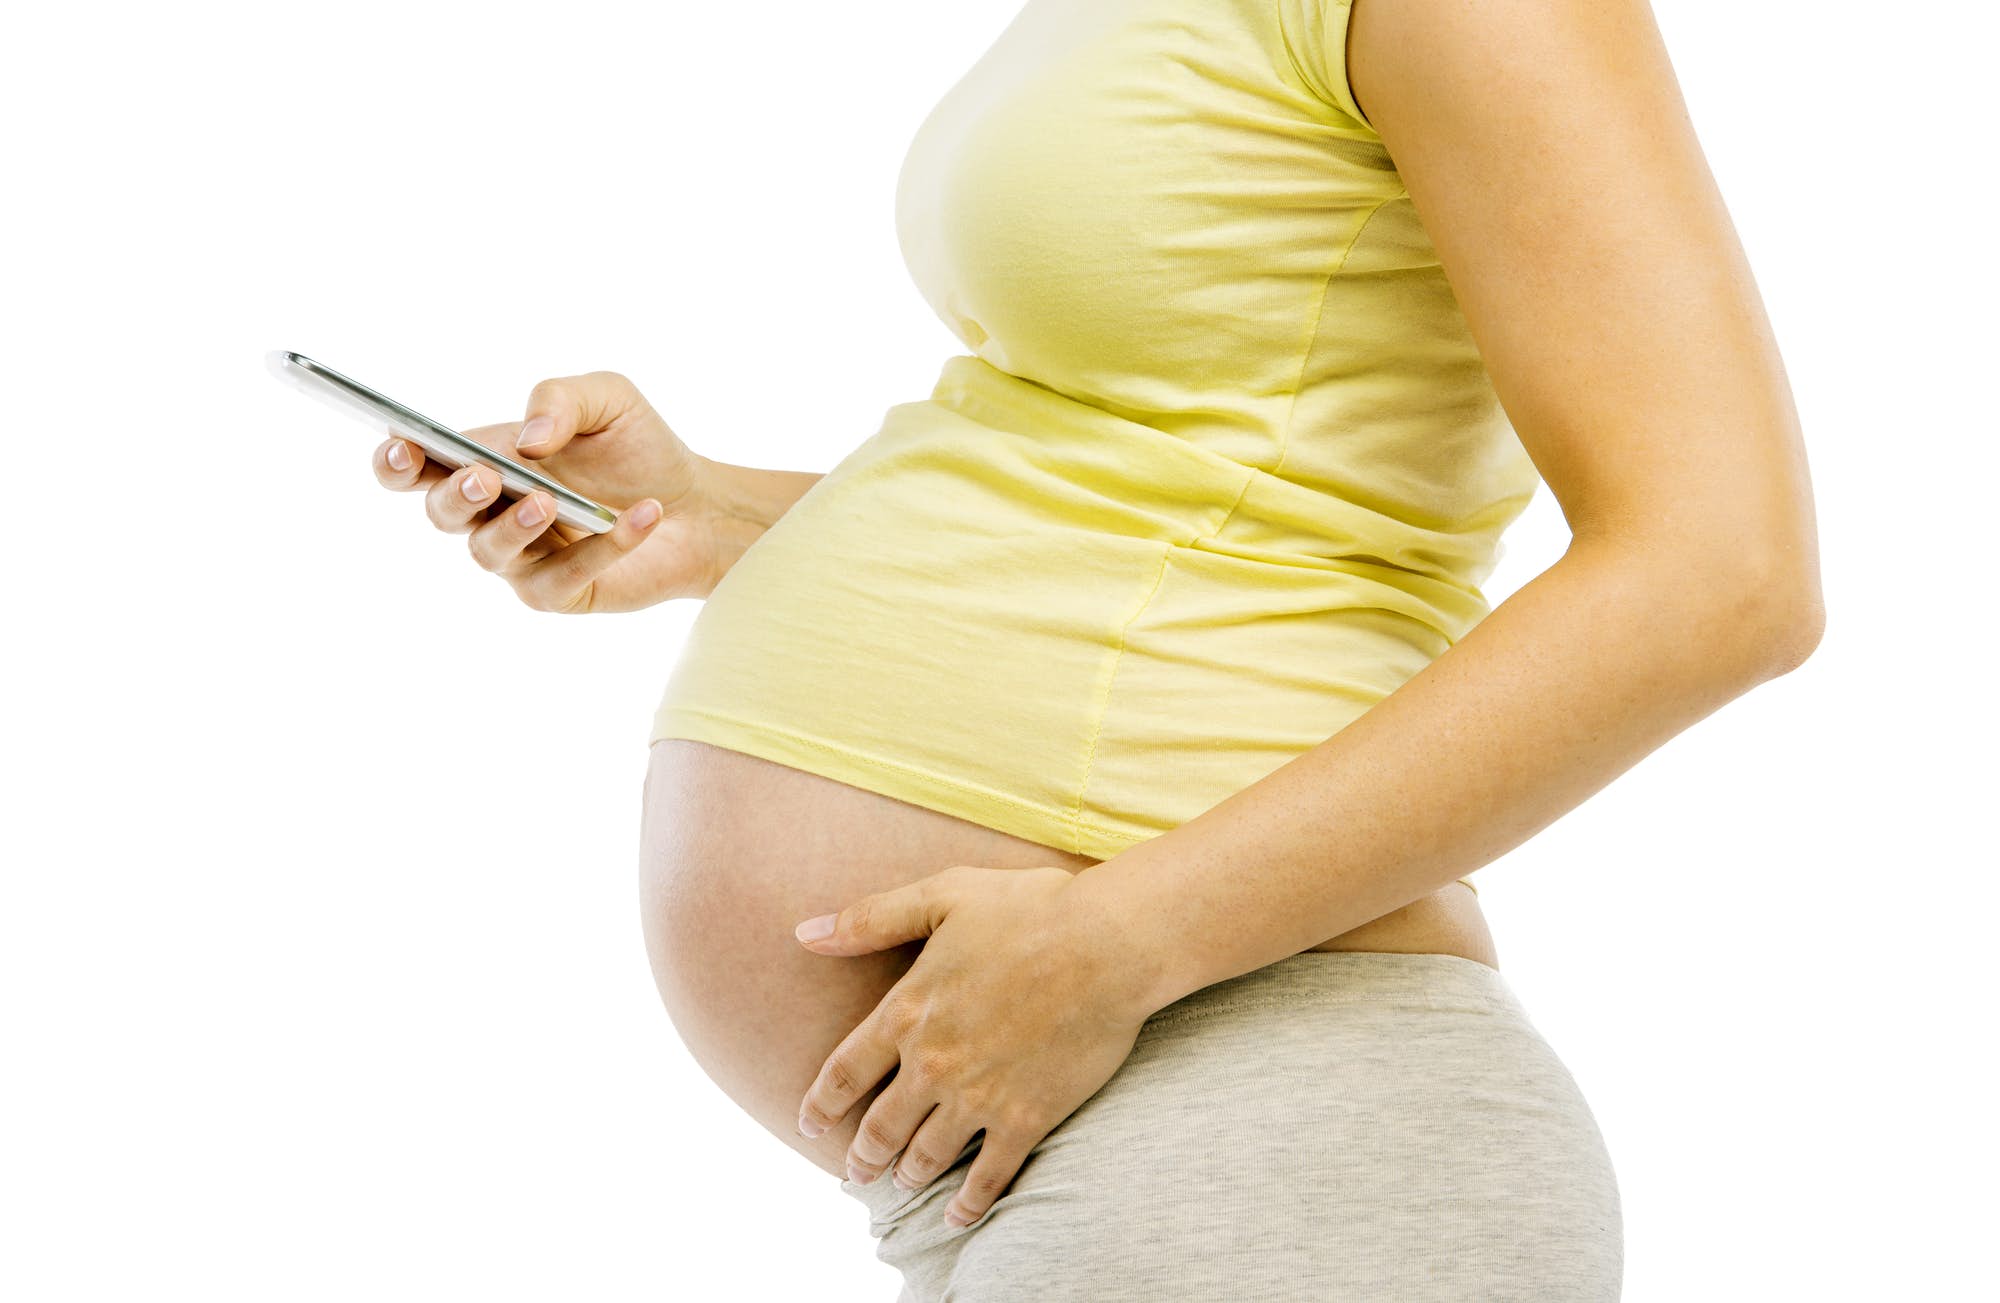 Tecnología basada en smartphones analiza la fertilidad femenina desde casa